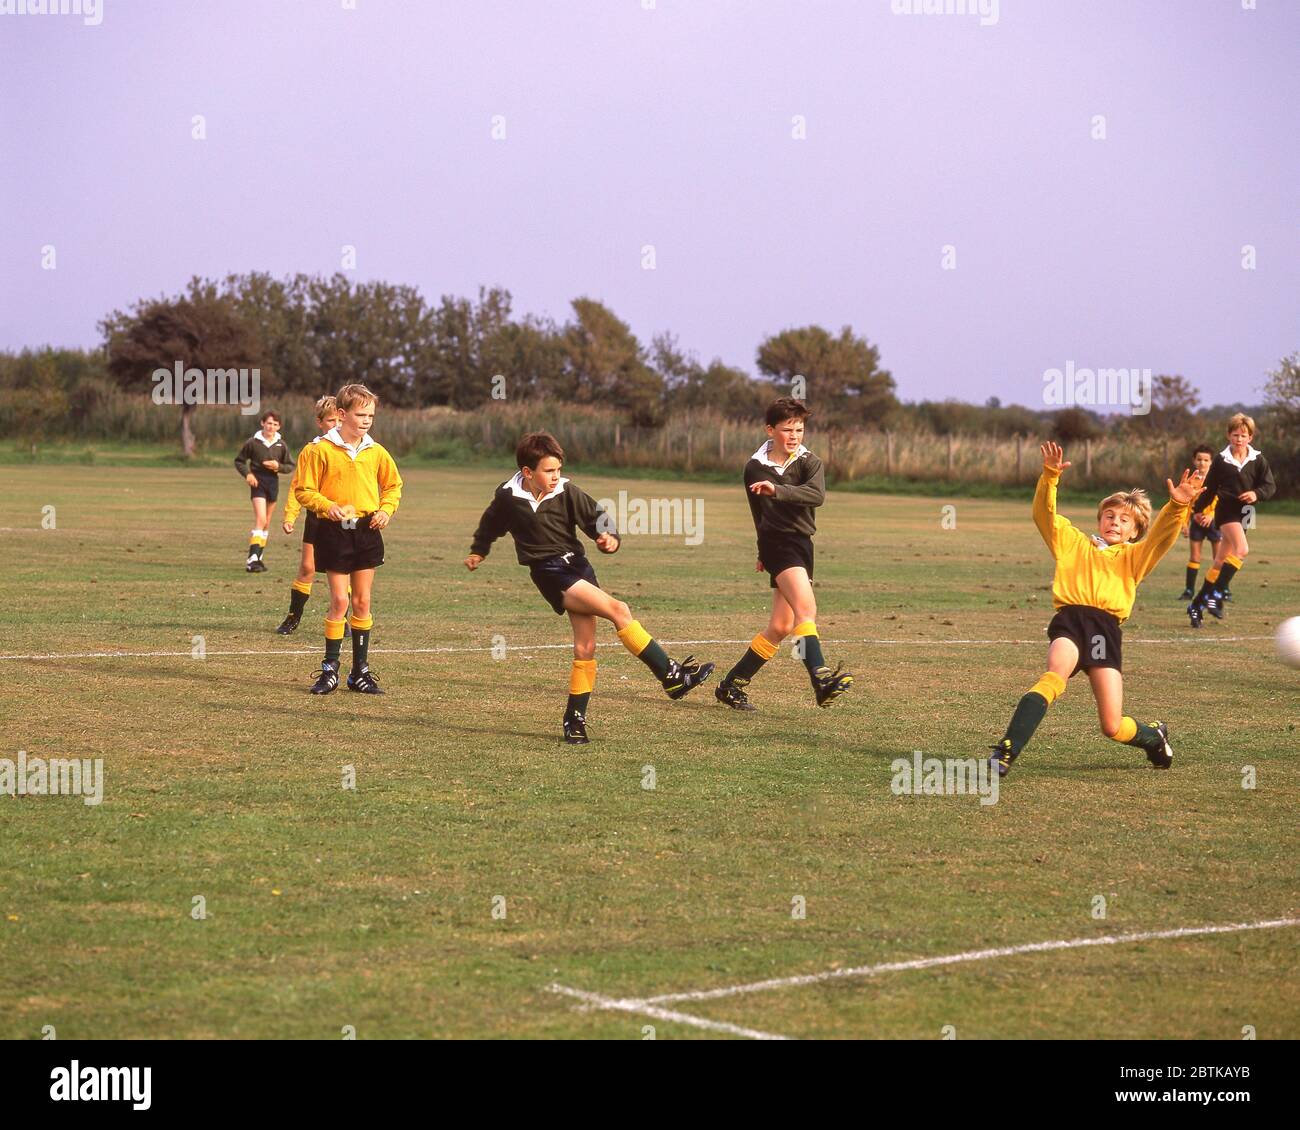 Garçons d'école jouant au football, Surrey, Angleterre, Royaume-Uni Banque D'Images